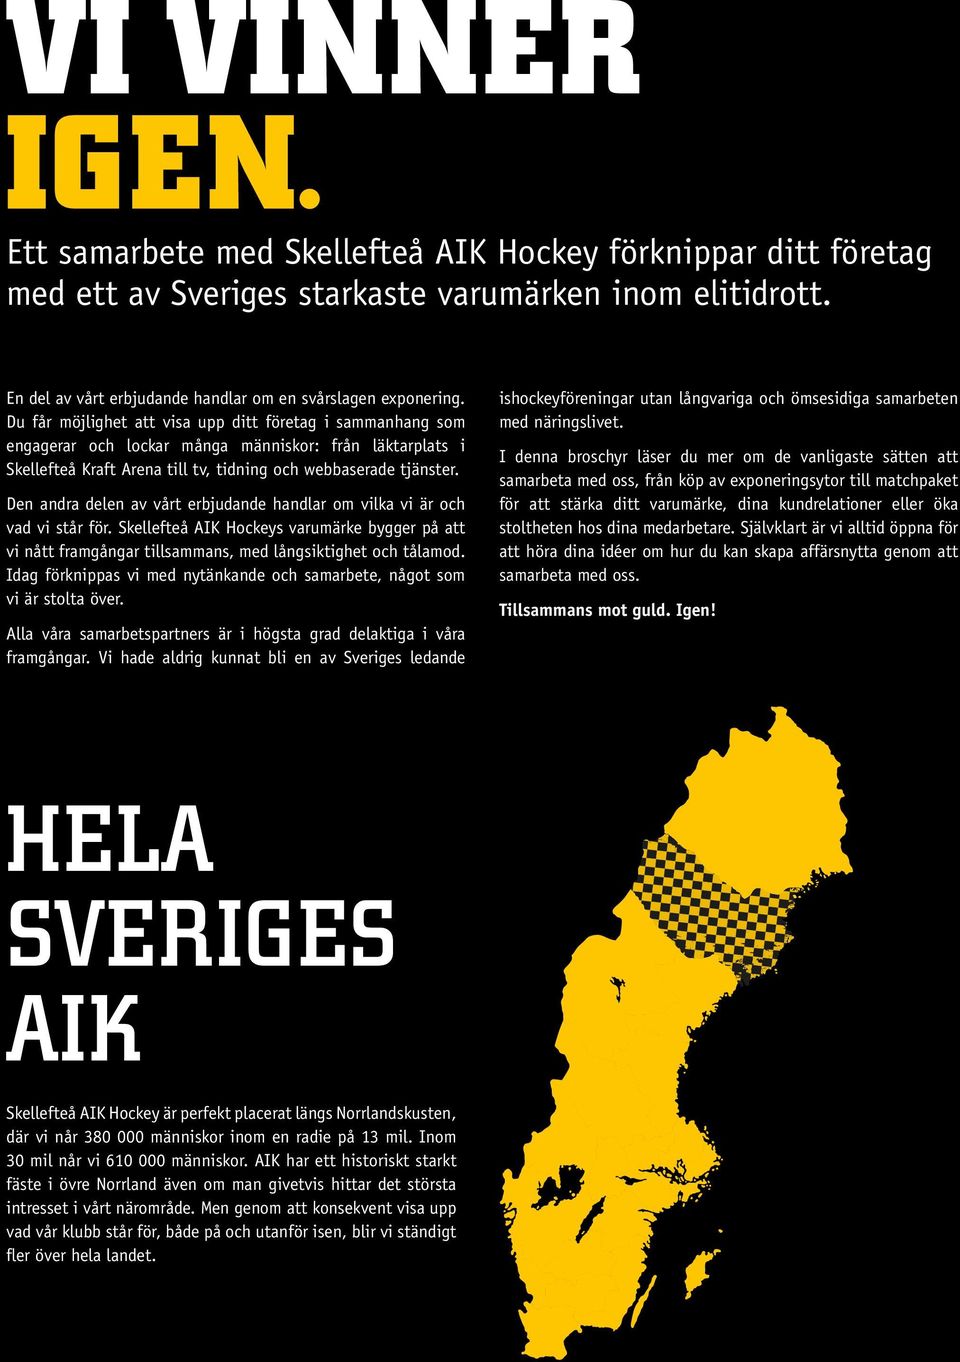 Den andra delen av vårt erbjudande handlar om vilka vi är och vad vi står för. Skellefteå AIK Hockeys varumärke bygger på att vi nått framgångar tillsammans, med långsiktighet och tålamod.